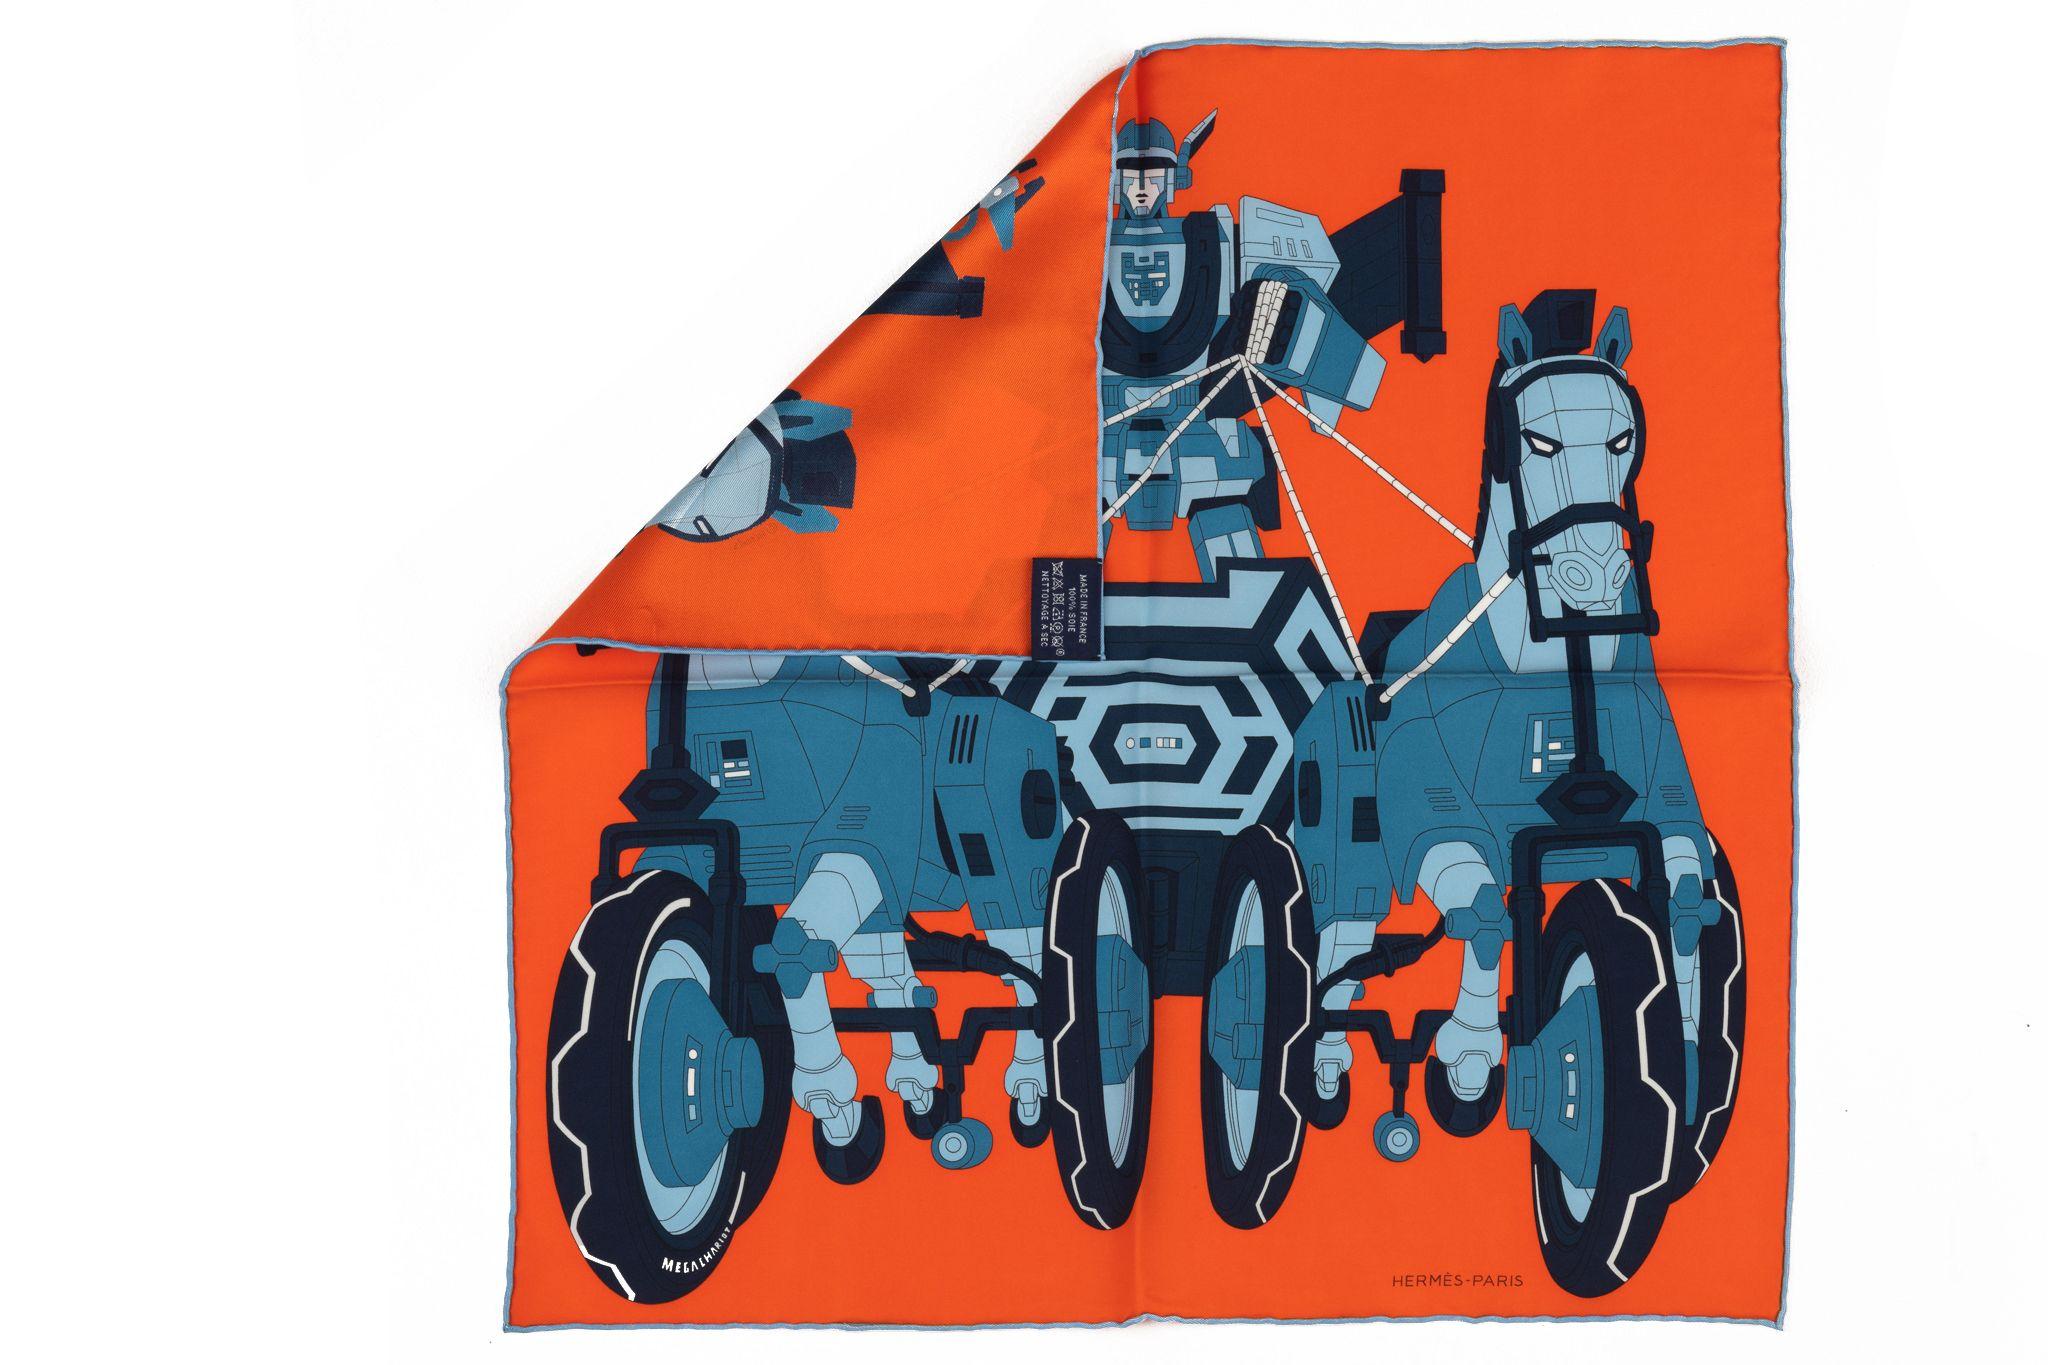 Hermès Mega Chariot par Daisuke Nomura Foulard. Nomura s'est inspiré d'un tricycle à cheval pour enfants de la collection Emile Hermes. Il montre le dieu Hermès qui aurait pris le char d'Apollo sans sa permission. Transformé en robot, le tricycle